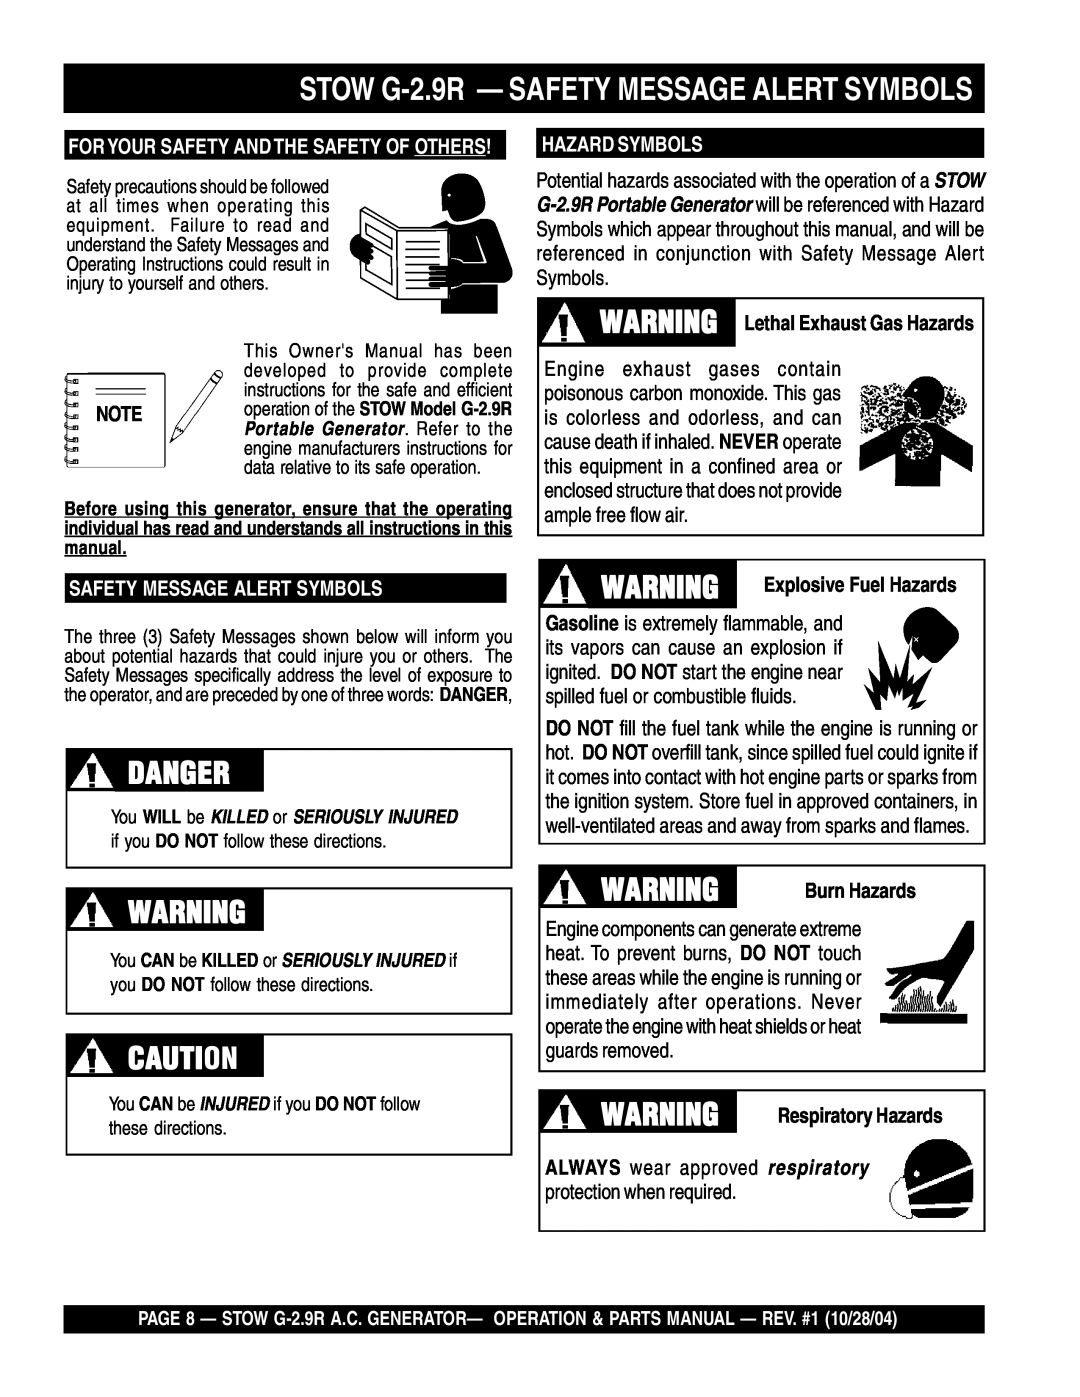 Stow Danger, STOW G-2.9R - SAFETY MESSAGE ALERT SYMBOLS, Hazard Symbols, Safety Message Alert Symbols, Burn Hazards 